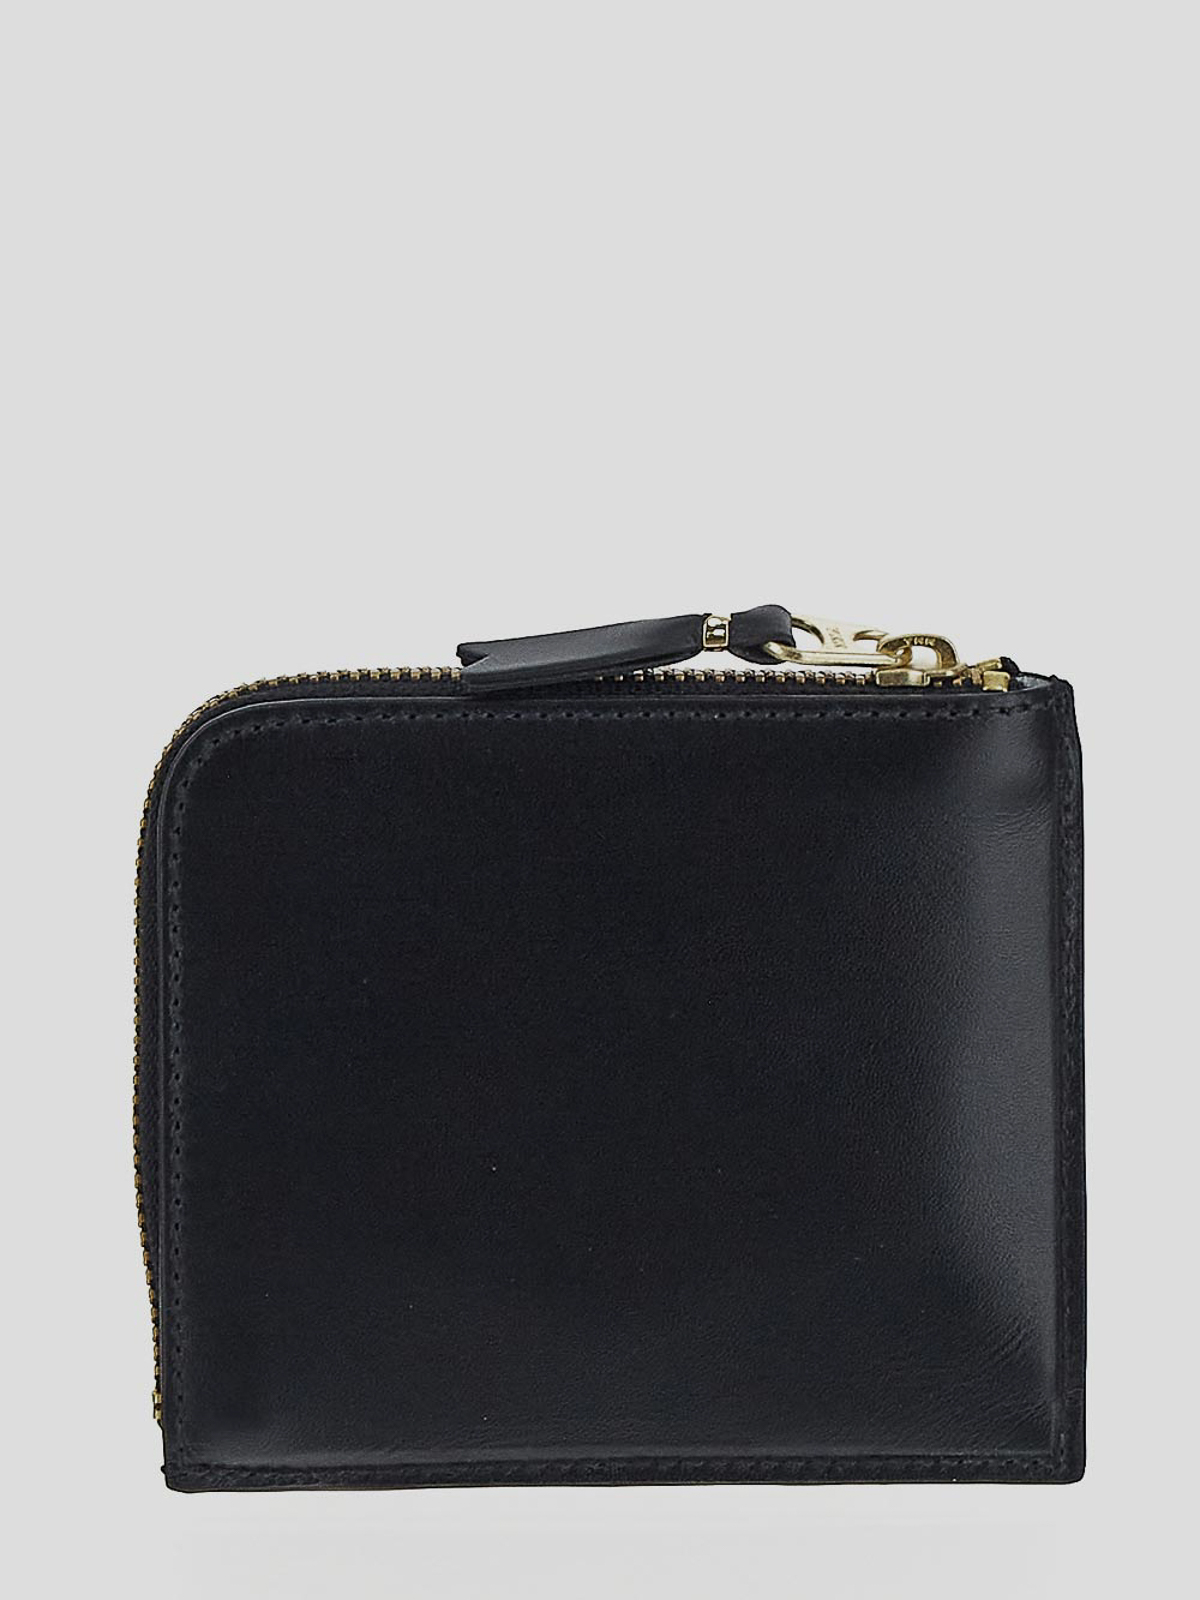 Shop Comme Des Garçons Zipped Wallet In Black